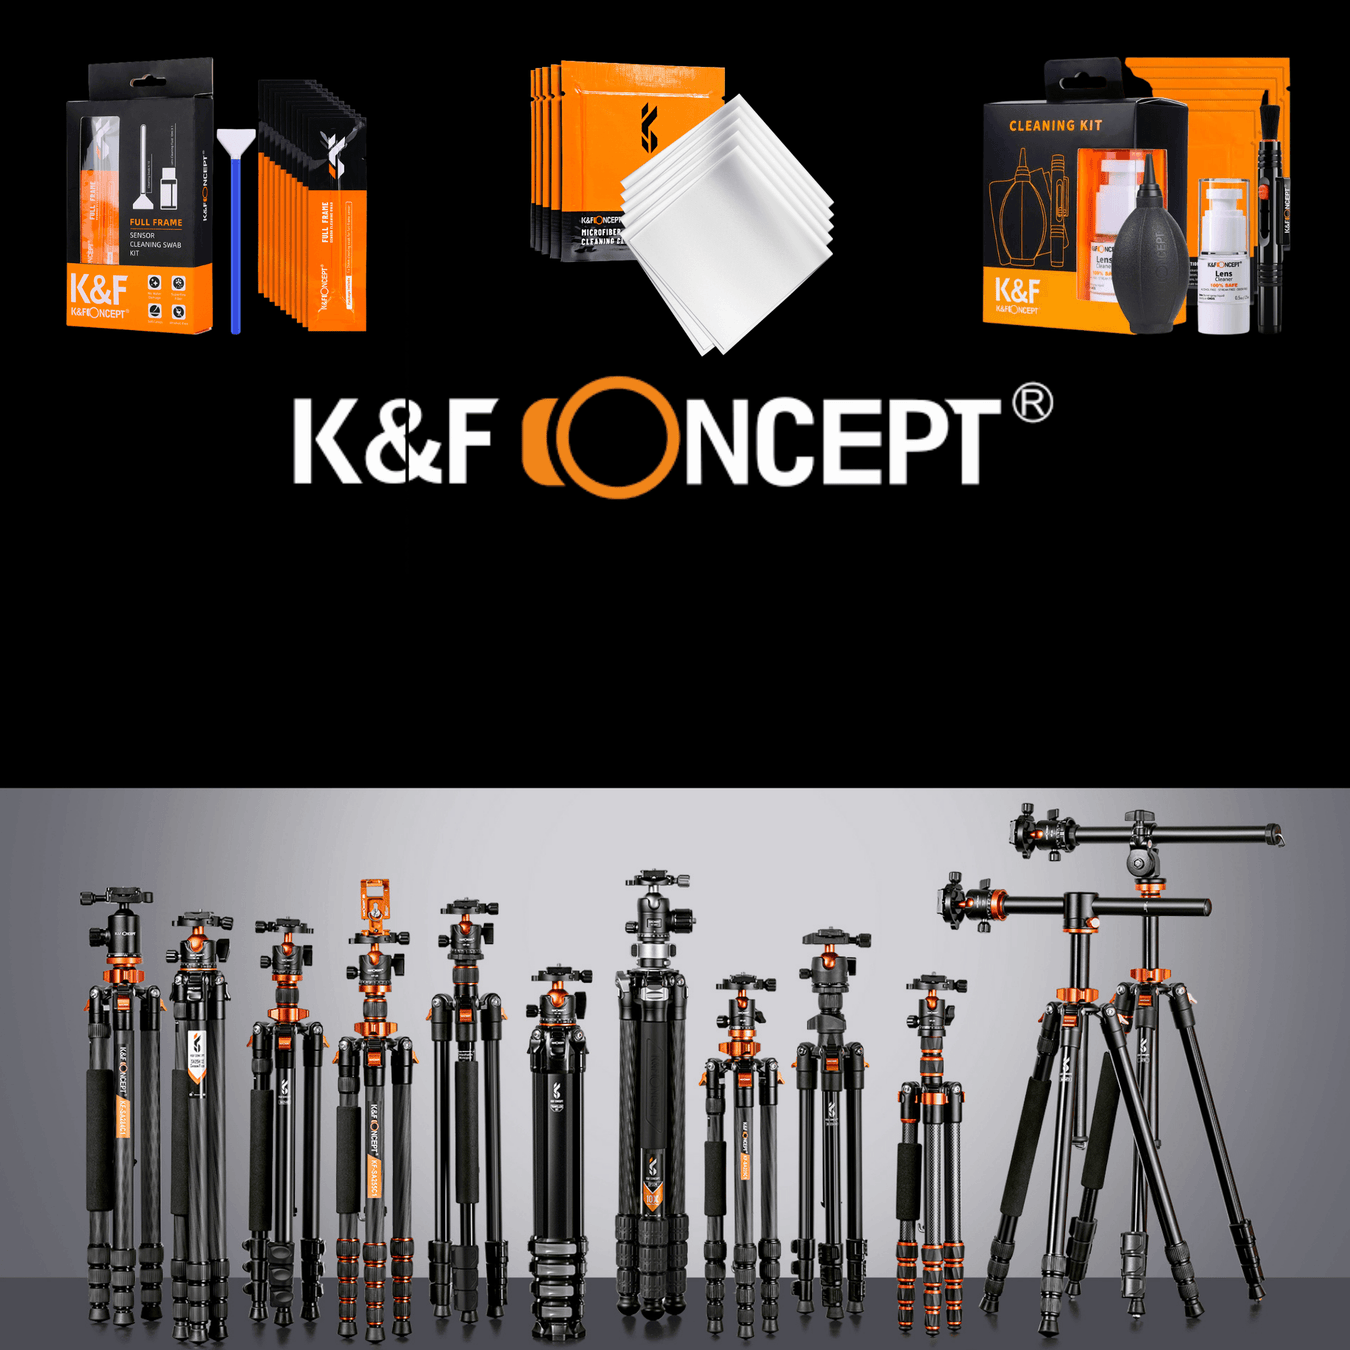 K&F Concept - 673SHOP.com